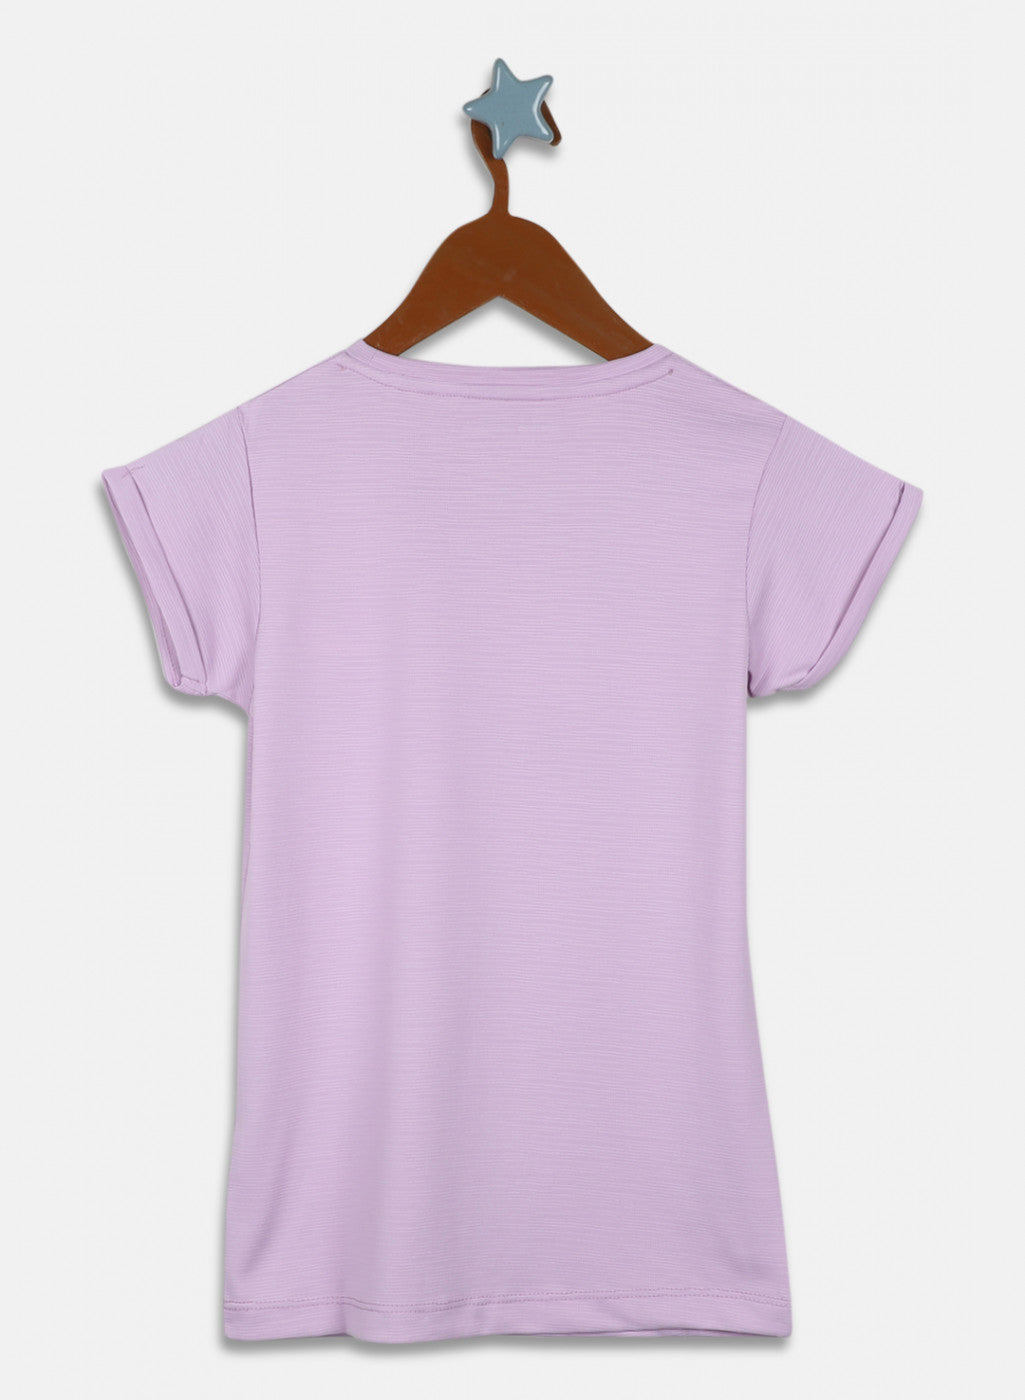 Girls Purple Printed Top